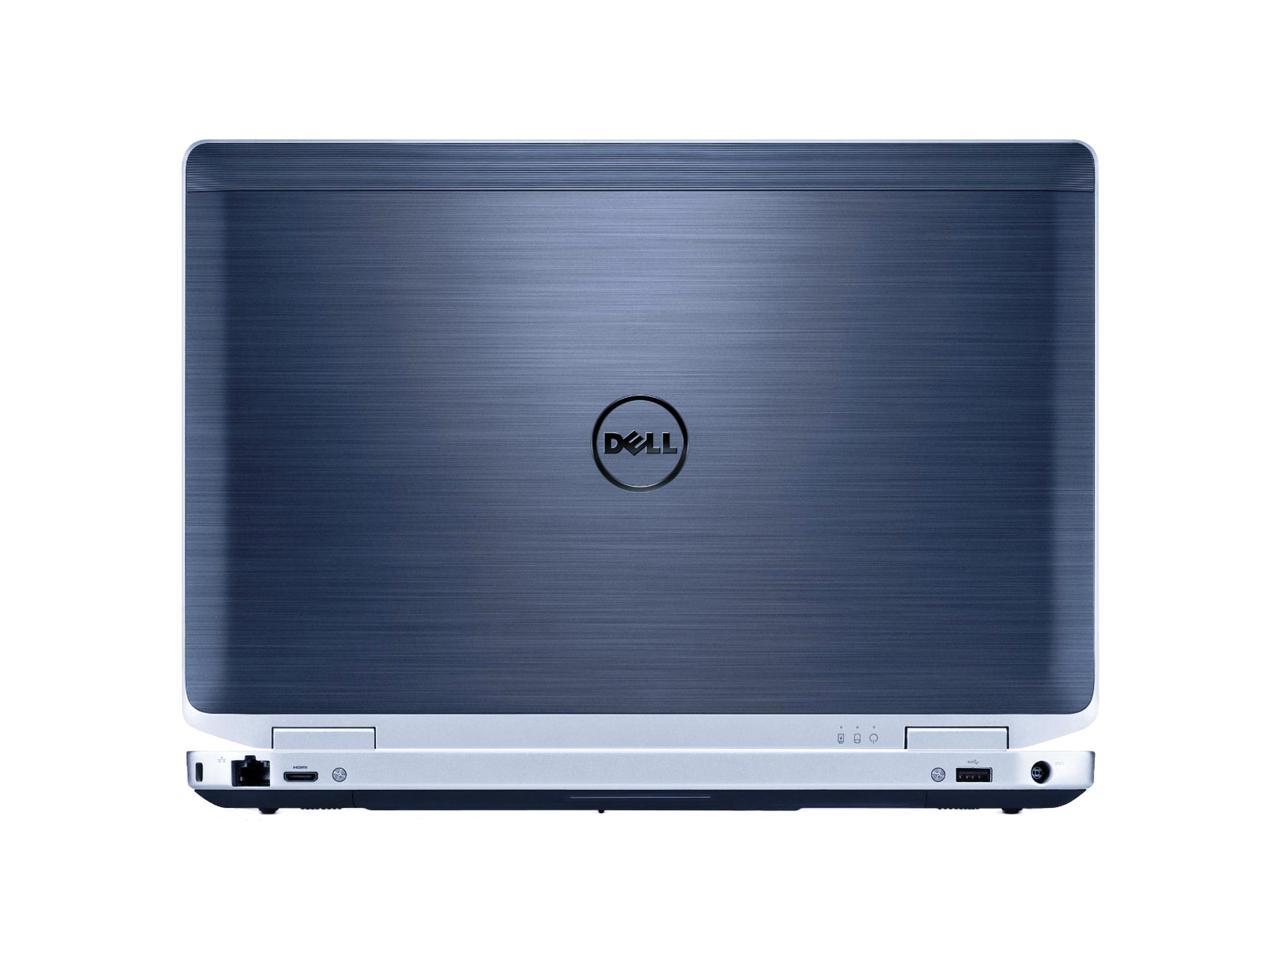 Dell Grade A Latitude E6330 13.3" Laptop, Intel Core I5-3320M up to 3.3G, 4G DDR3, 128G SSD, DVD, USB 3.0, VGA, miniHDMI, Windows 10 Pro 64 bits Multi-language(EN/ES)